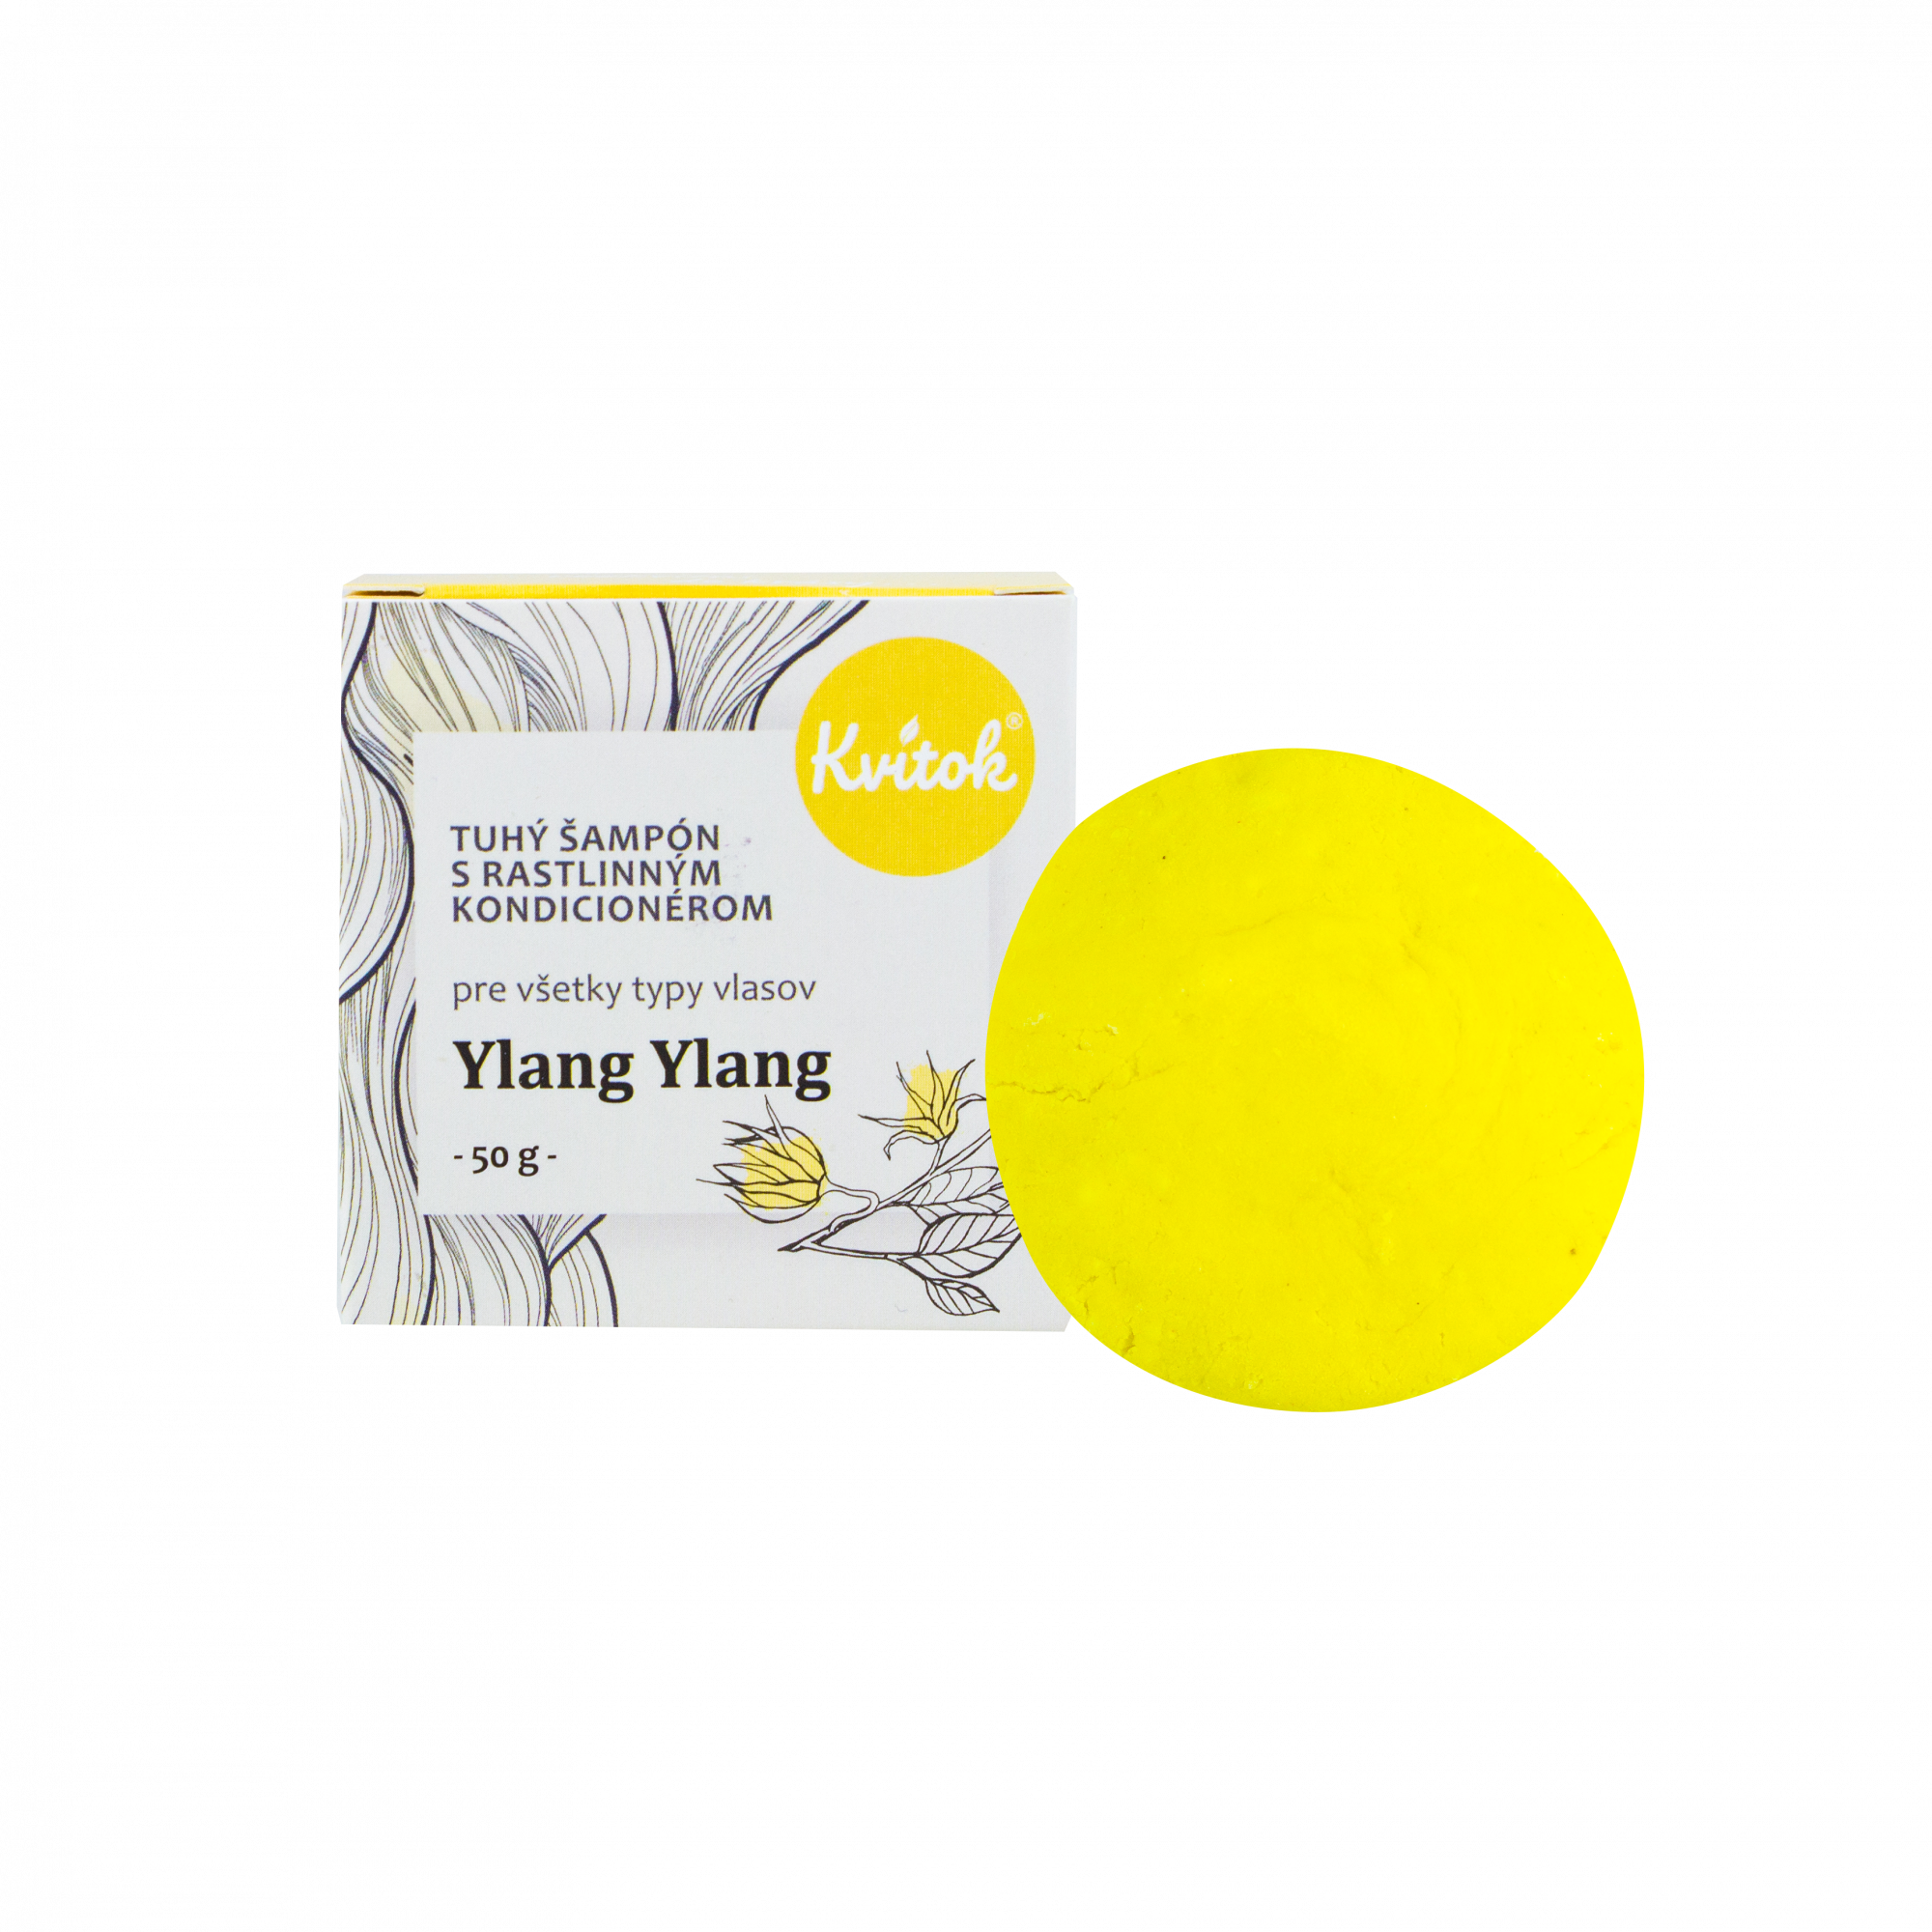 Kvitok Tuhý šampon s kondicionérem pro světlé vlasy Ylang Ylang 50 g - krásně pění